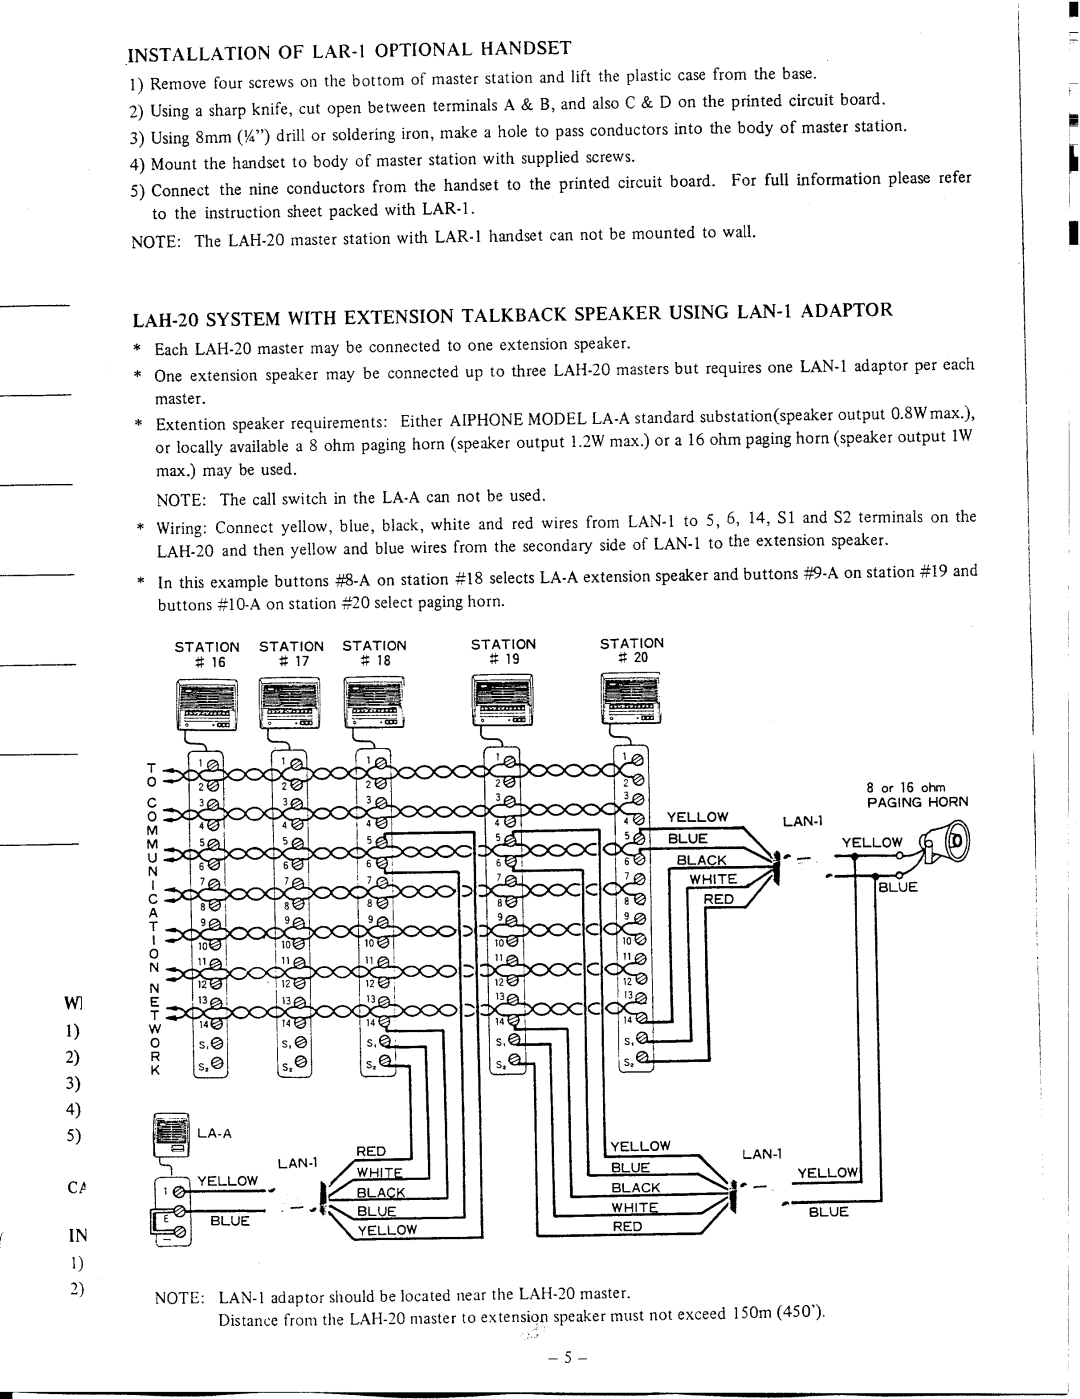 Aiphone LAW-1, LAH-20 manual 